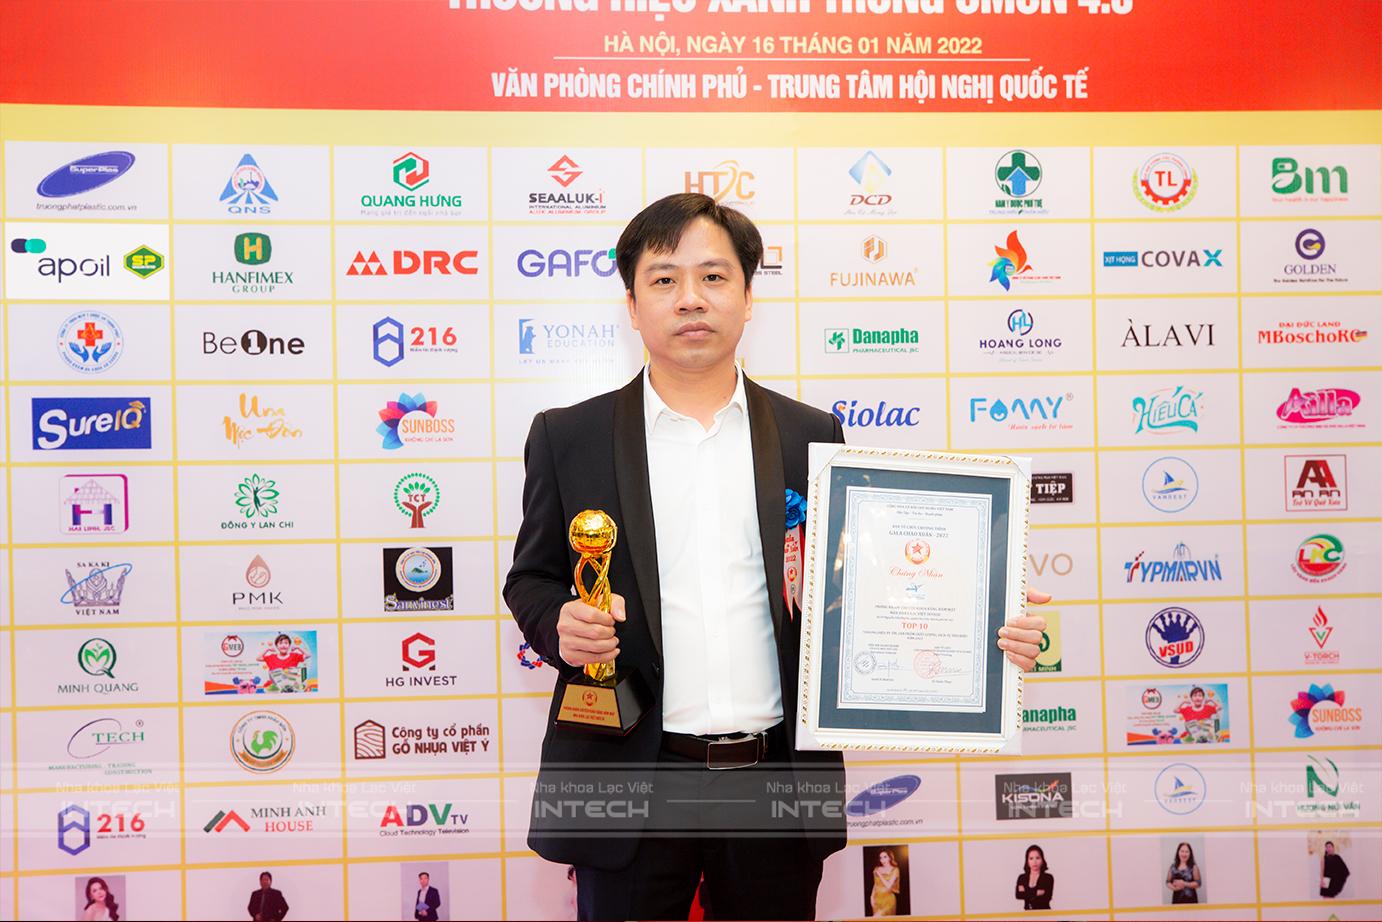 Nha khoa Lạc Việt Intech vinh dự được nhận giải thưởng Top 10 thương hiệu uy tín năm 2021